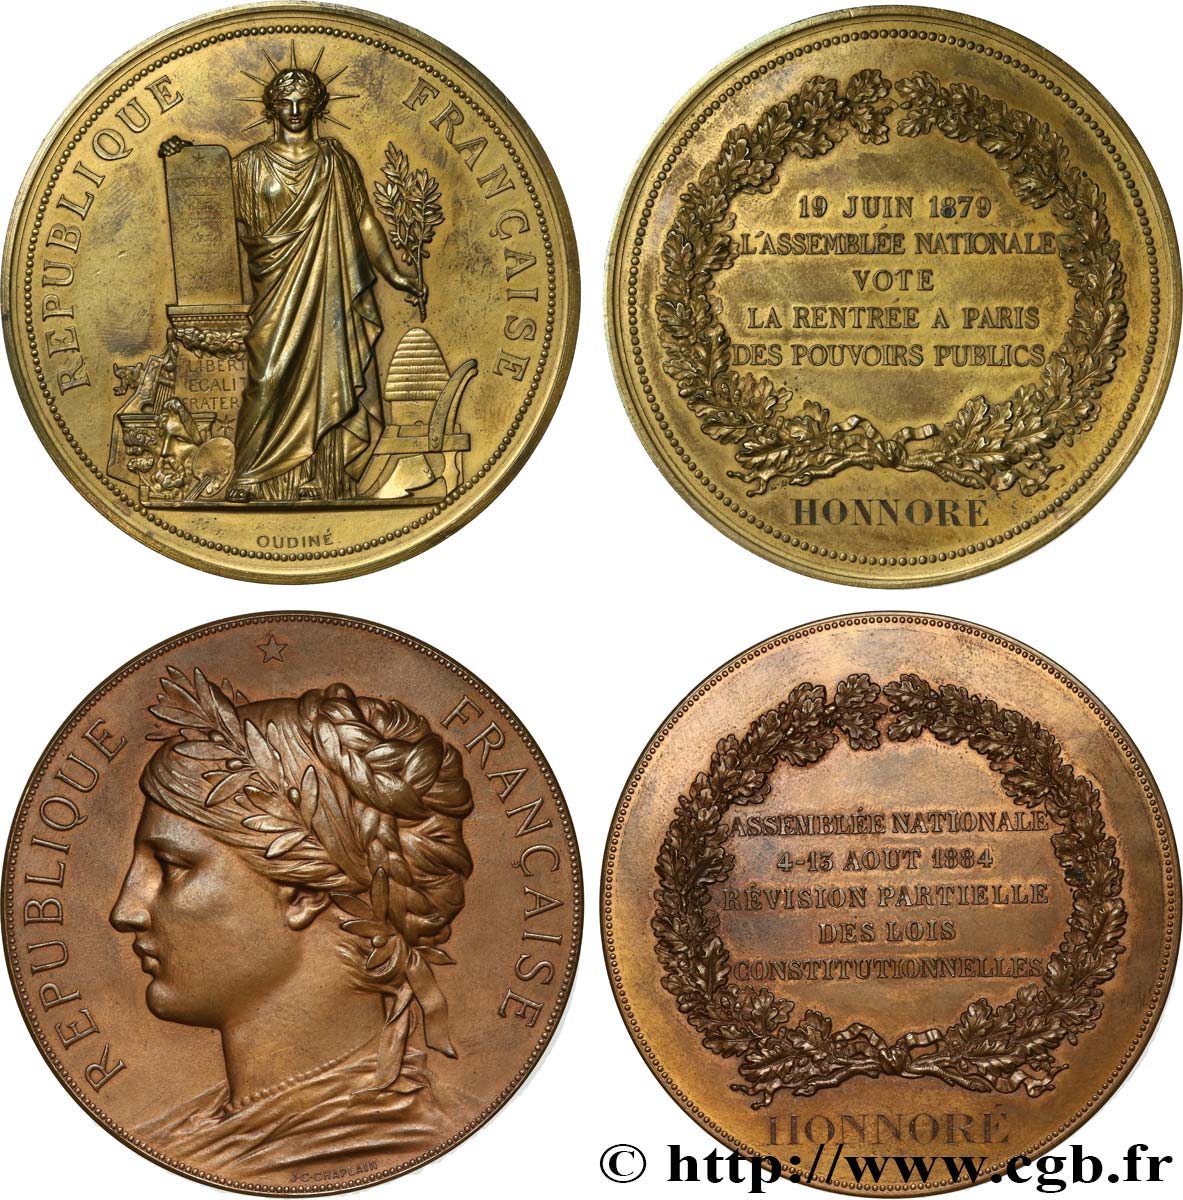 DRITTE FRANZOSISCHE REPUBLIK Deux médailles commémoratives, pour Honnoré SS